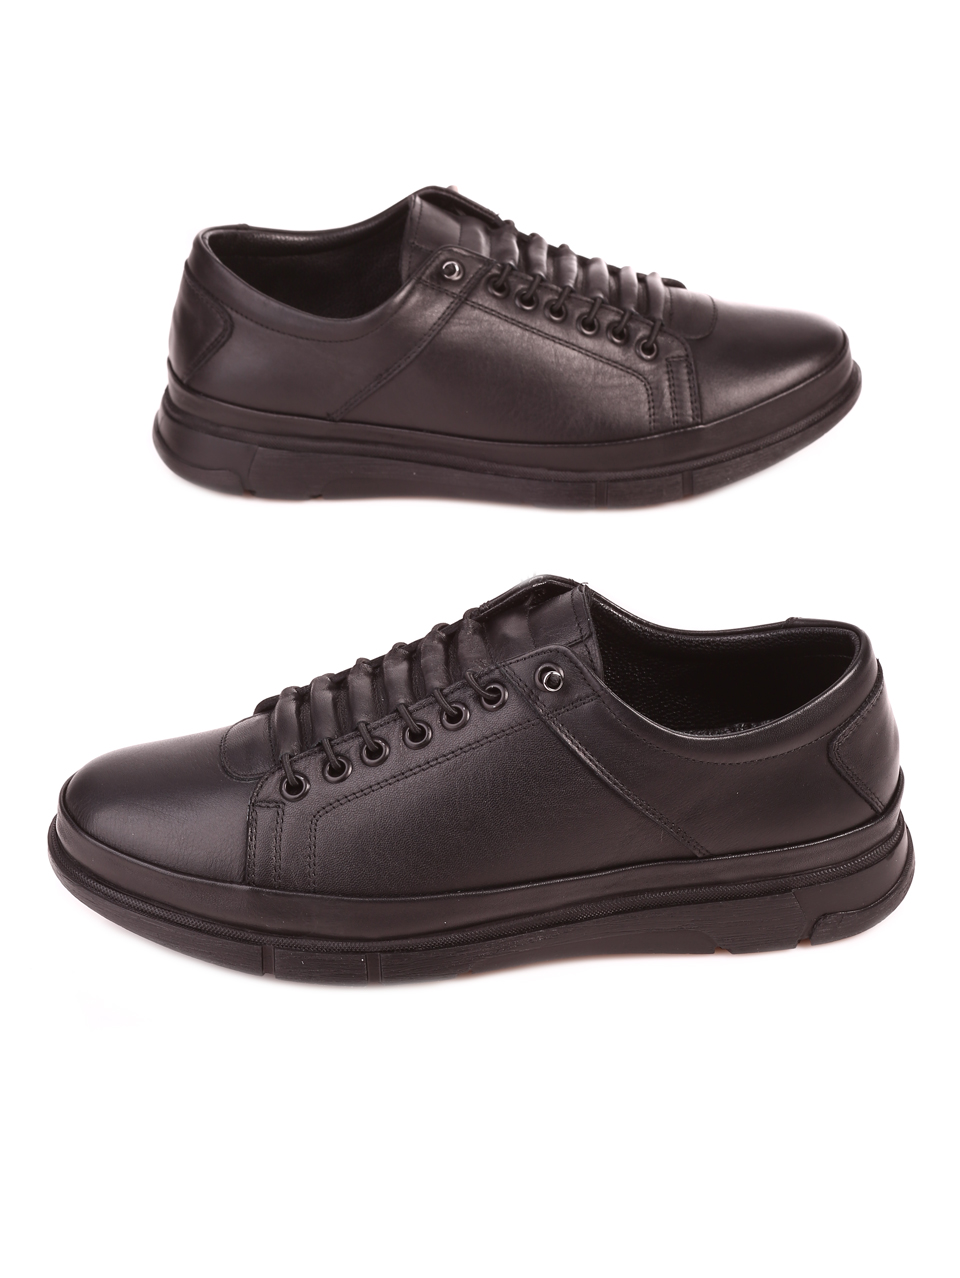 Eжедневни мъжки обувки от естествена кожа в черно 7AT-23780 black (21842)